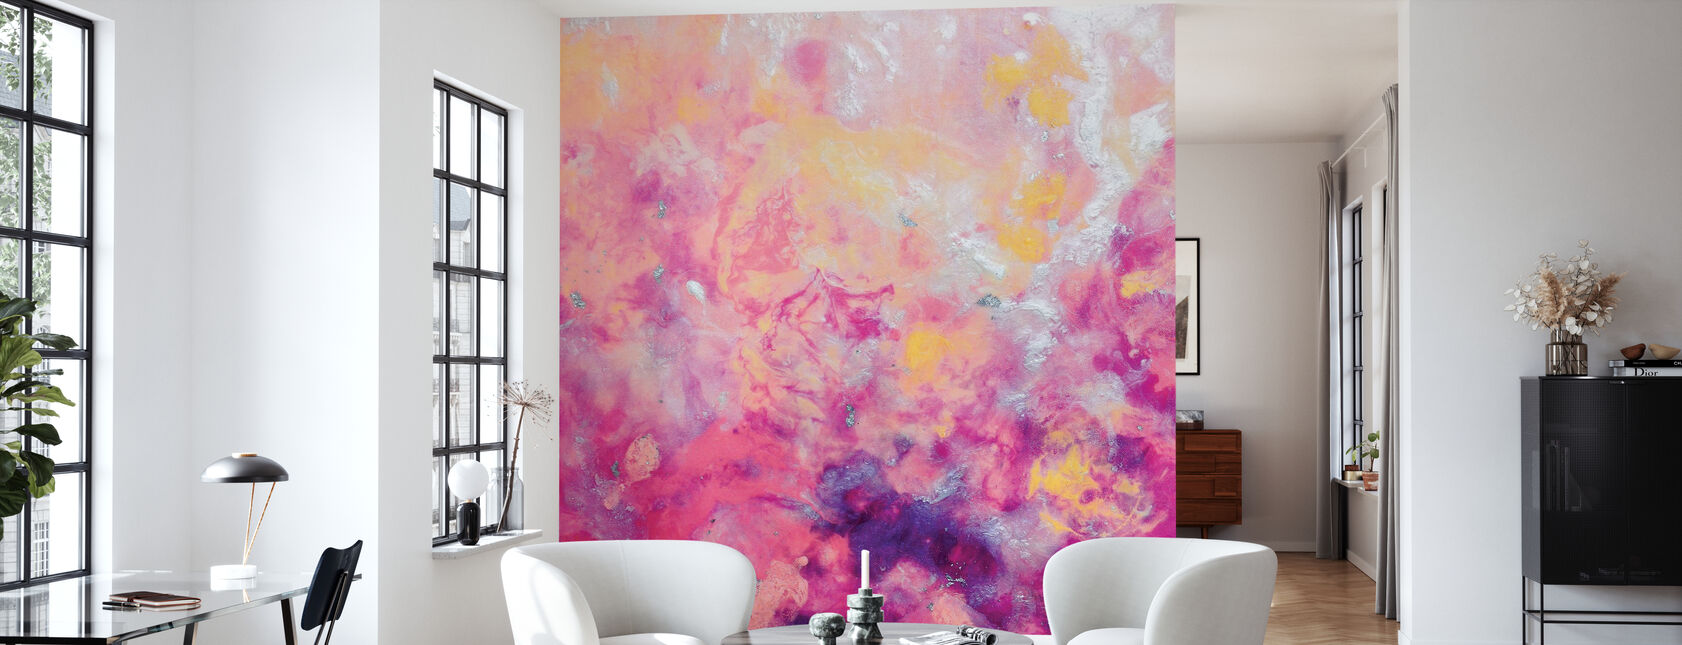 Gentle Flames - Wallpaper - Living Room